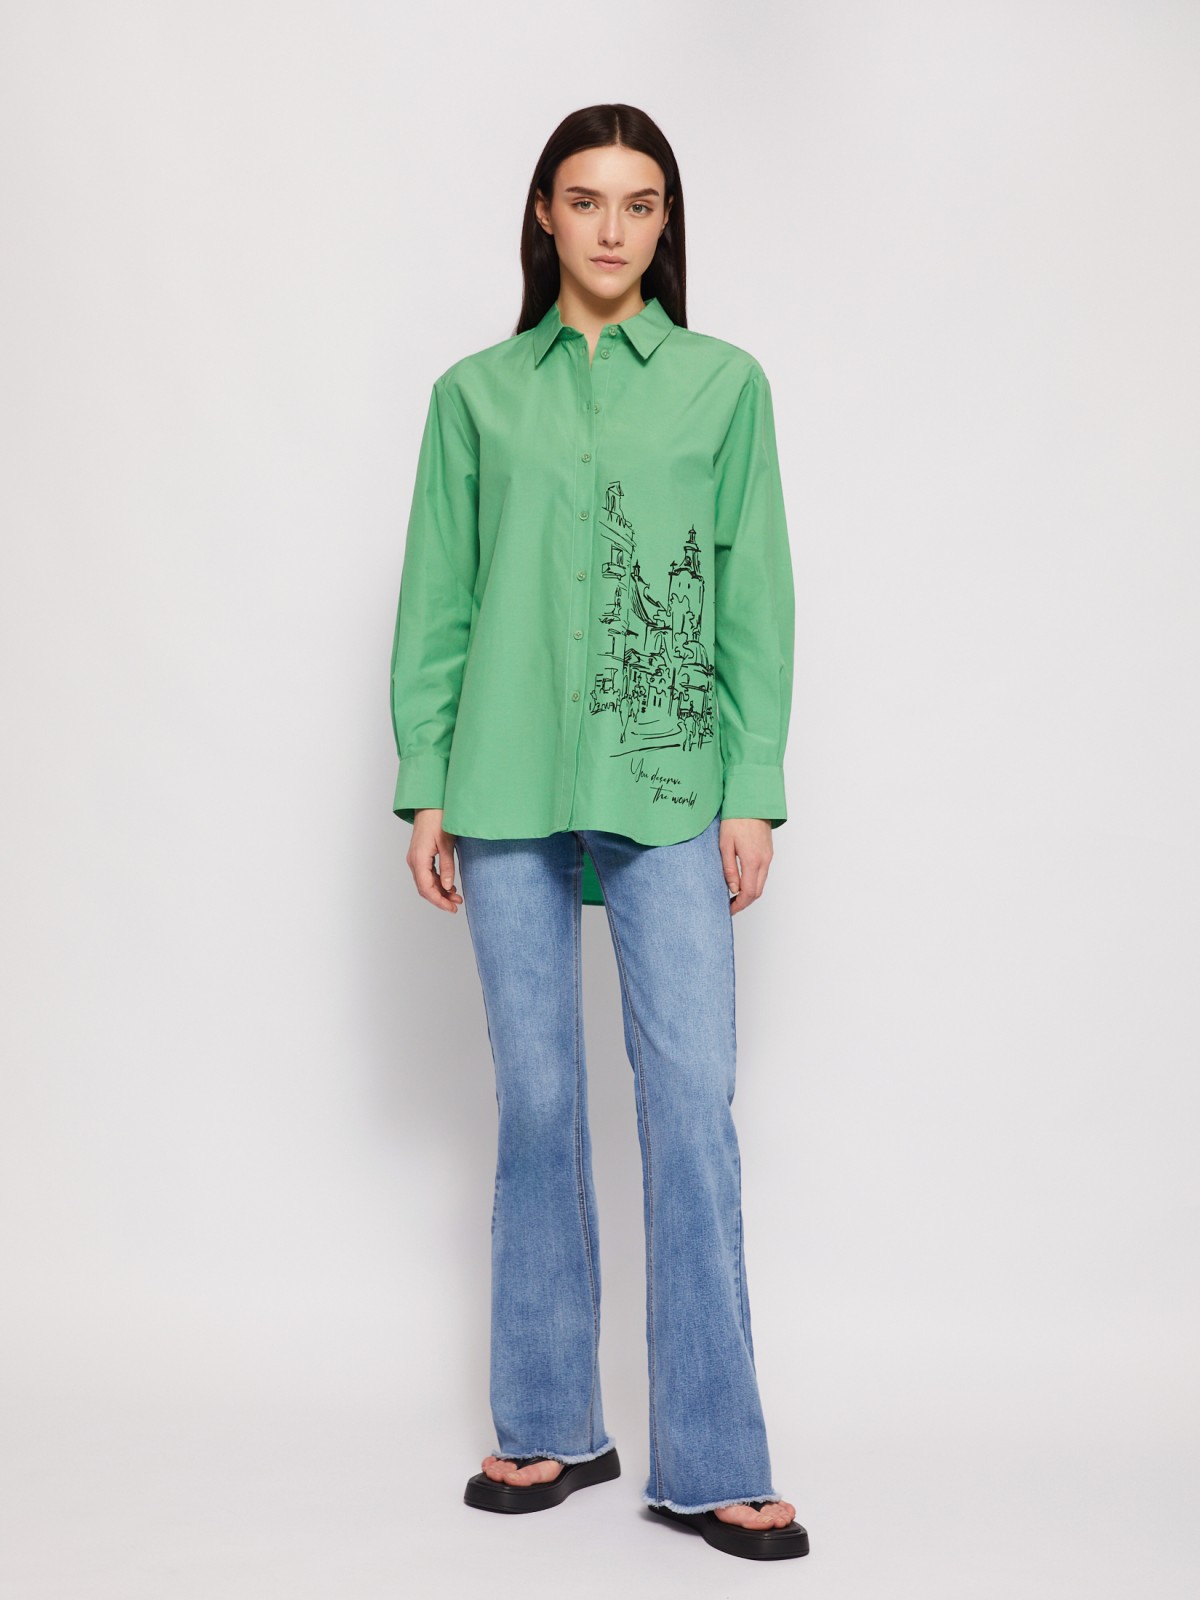 Рубашка прямого фасона с принтом zolla 024221159313, цвет зеленый, размер M - фото 2